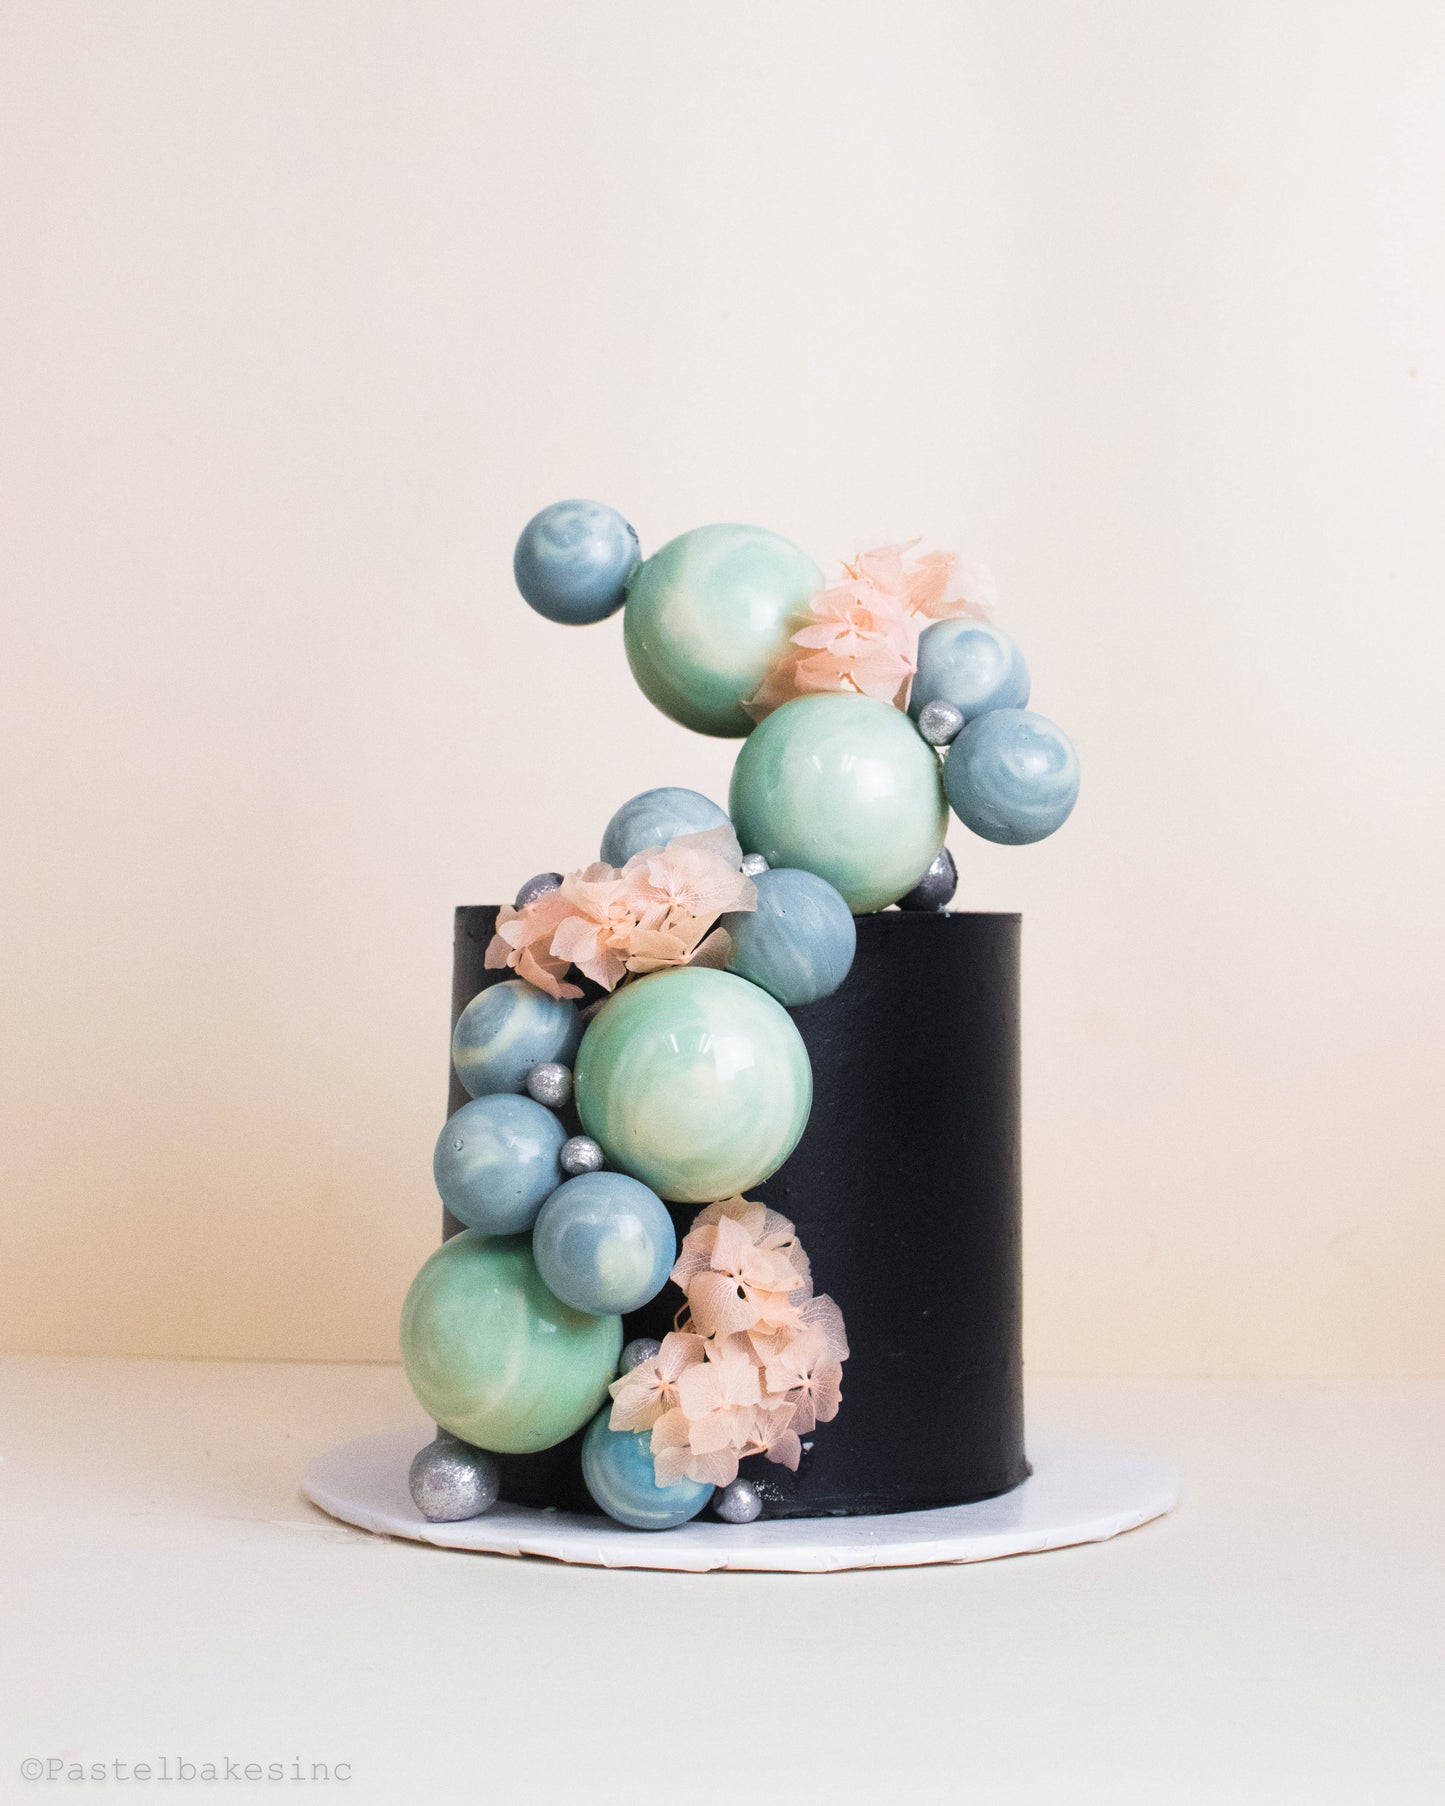 Custom Cake/Cupcake Design